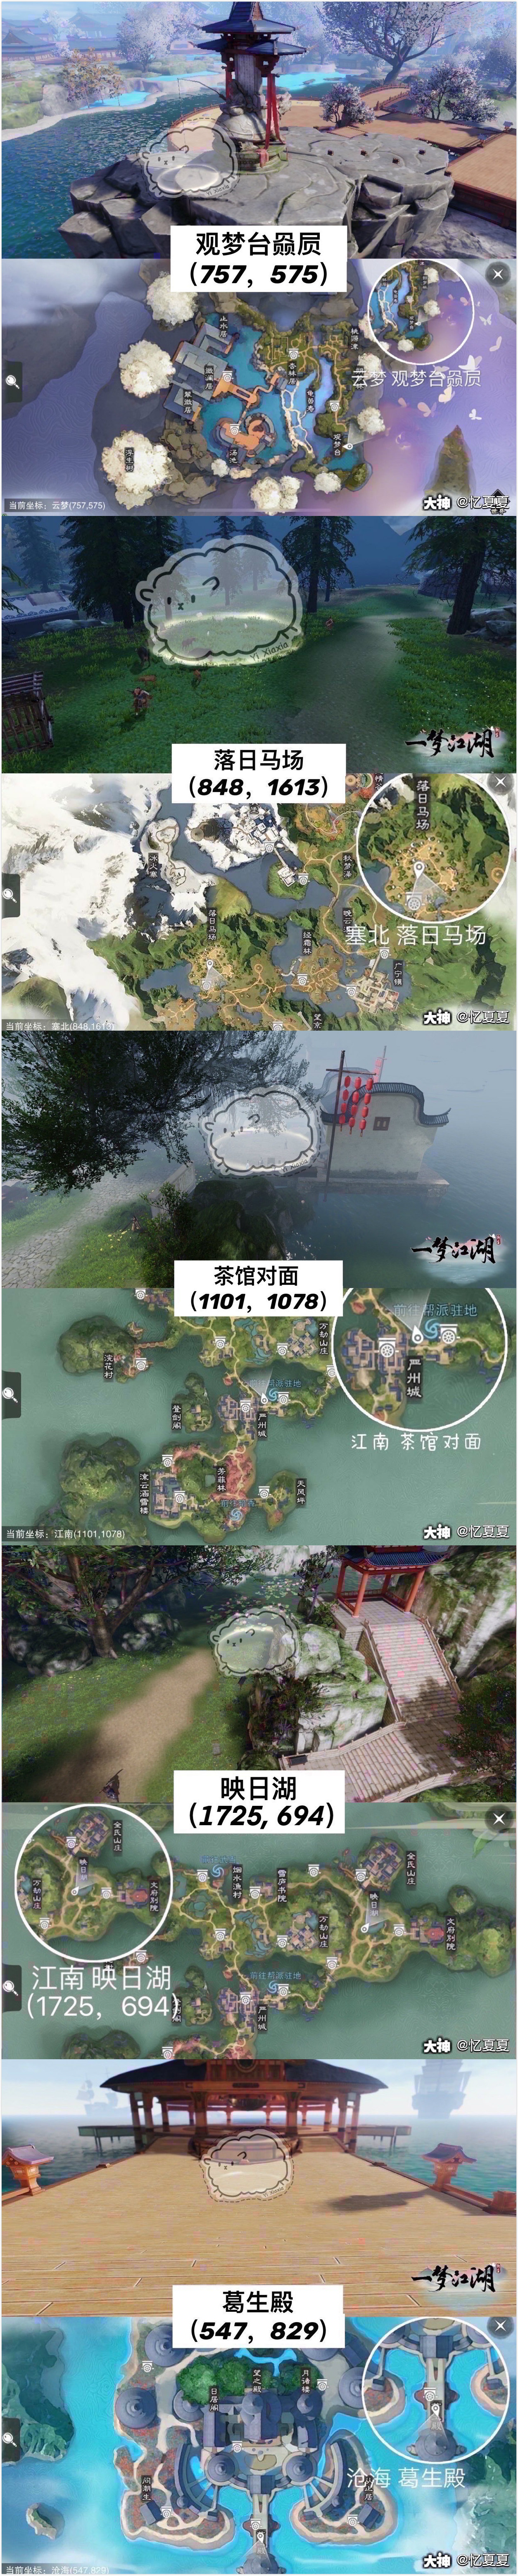 一梦江湖2021年2月2日打坐点坐标一览